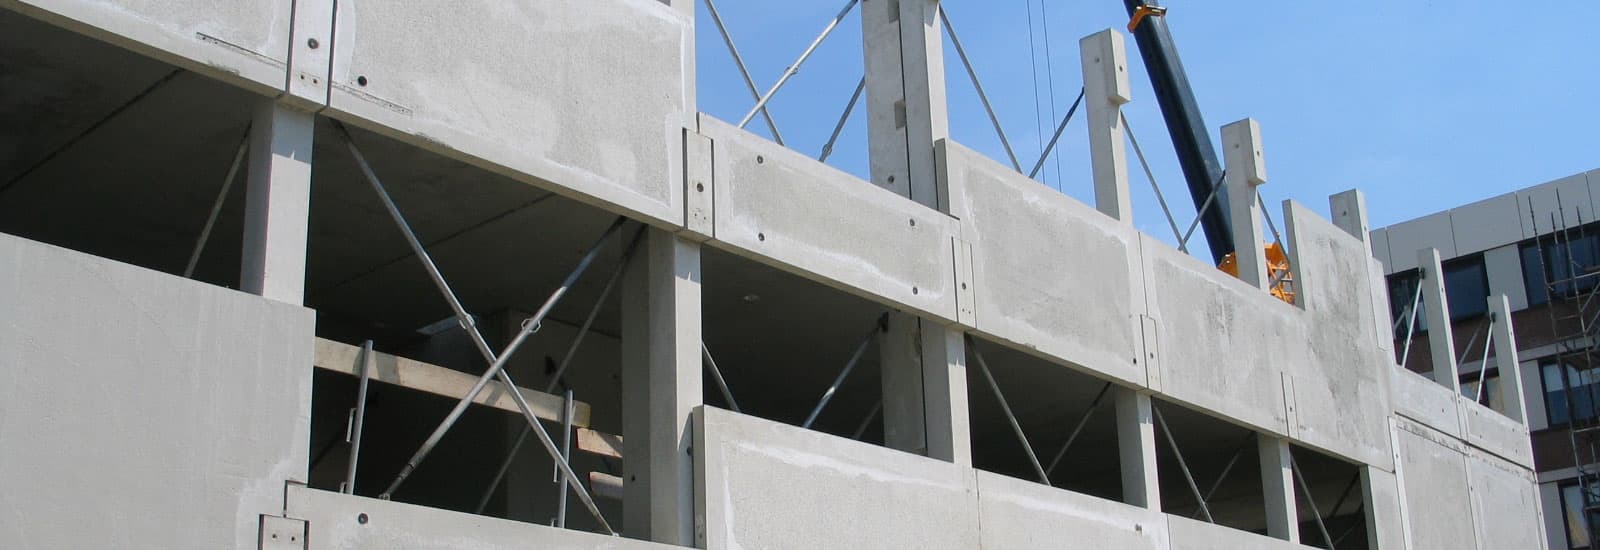 Voorbeeld van een erp systeem in de betonindustrie